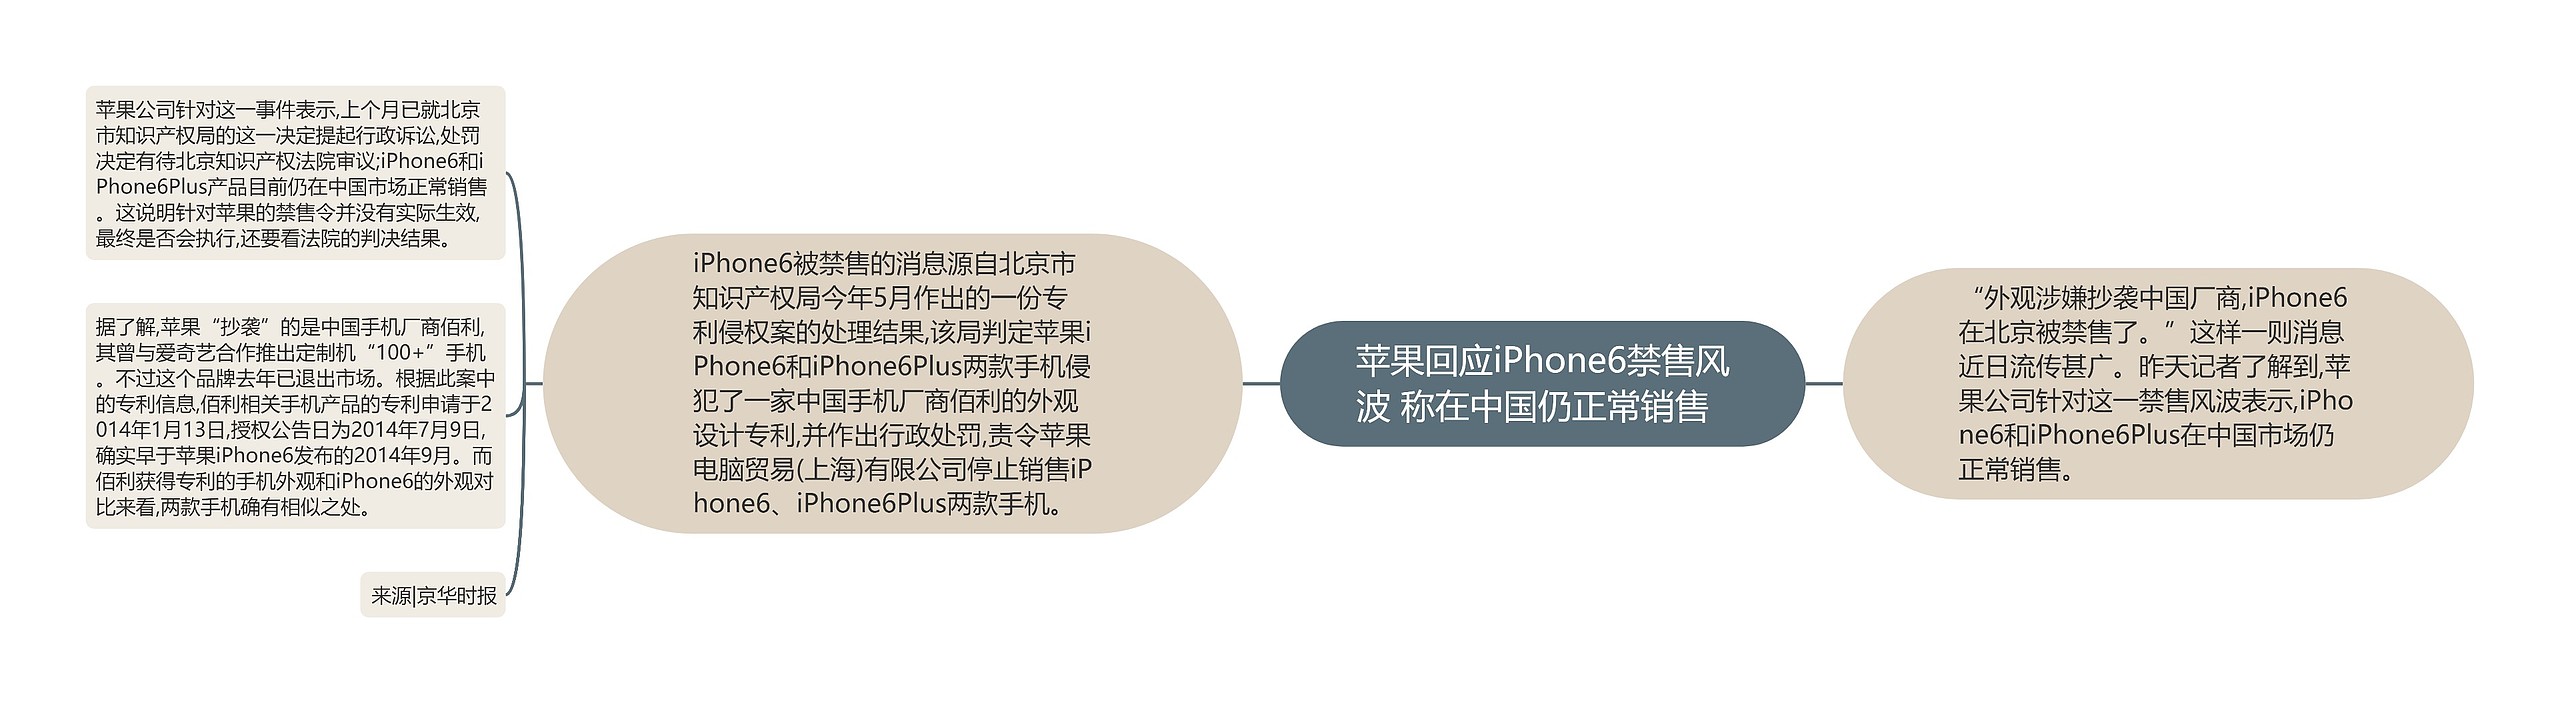 苹果回应iPhone6禁售风波 称在中国仍正常销售  